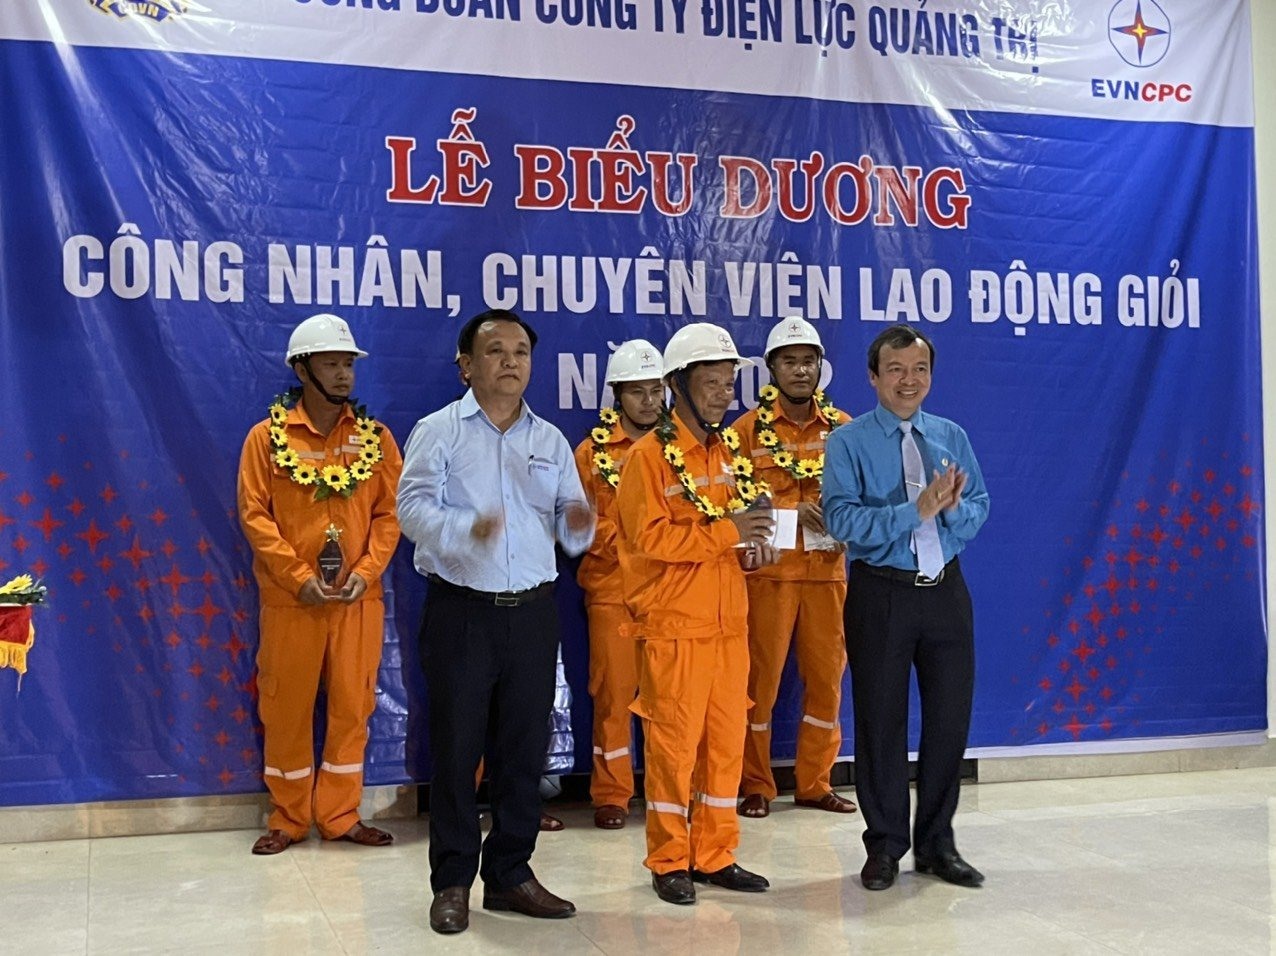 Công nhân Nguyễn Văn Quyền tại lễ biểu dương công nhân, chuyên viên lao động giỏi năm 2022 của Công ty Điện lực Quảng Trị. Ảnh: Lê Thế Minh